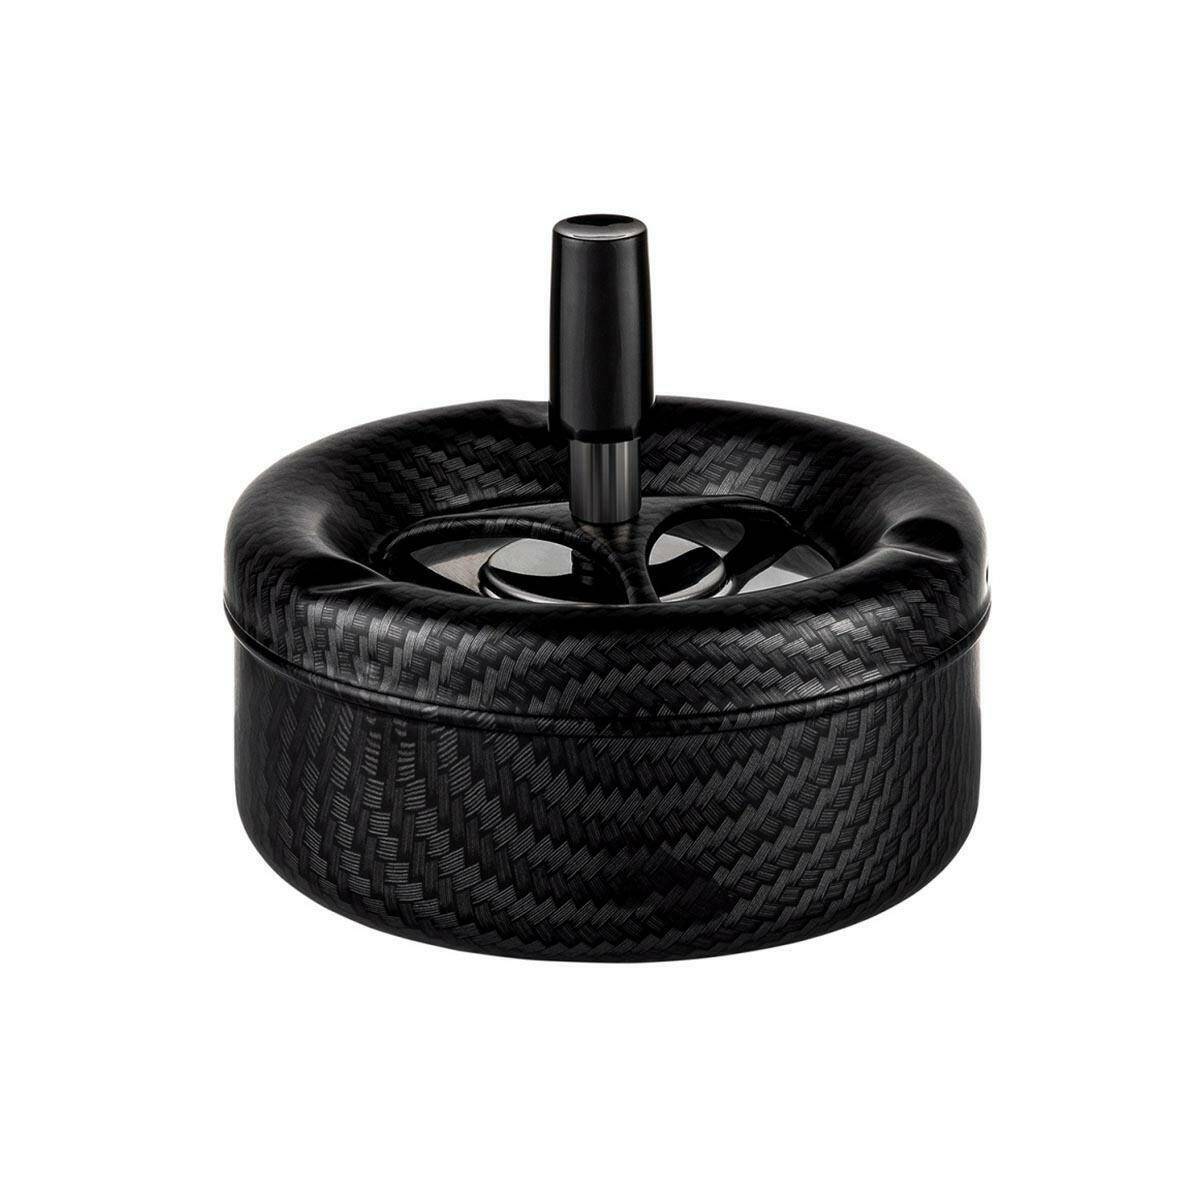 SEL-Swivel ashtray 11cm Black